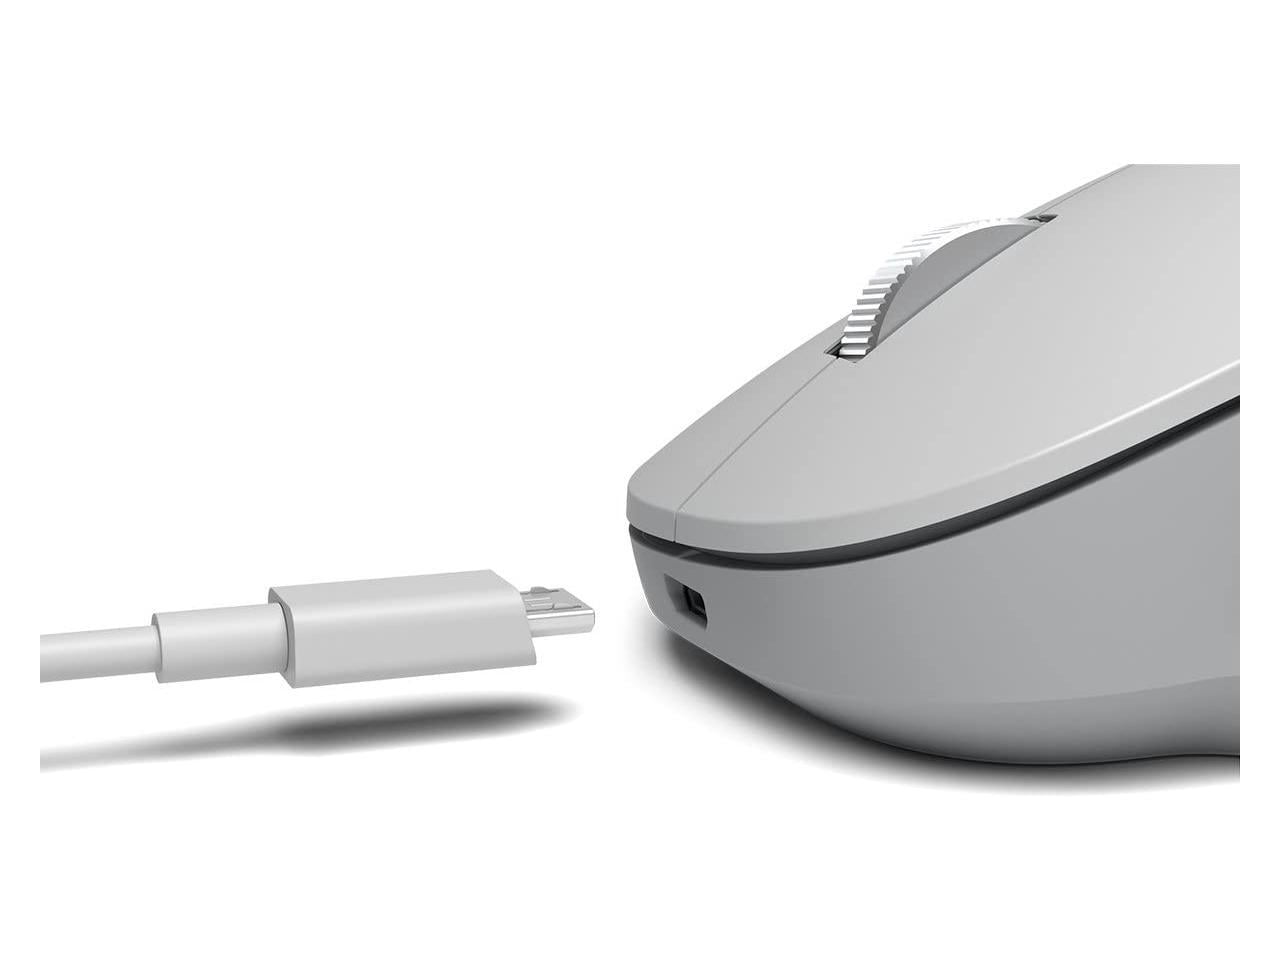 Microsoft Precision Mouse - Microsoft Accessories